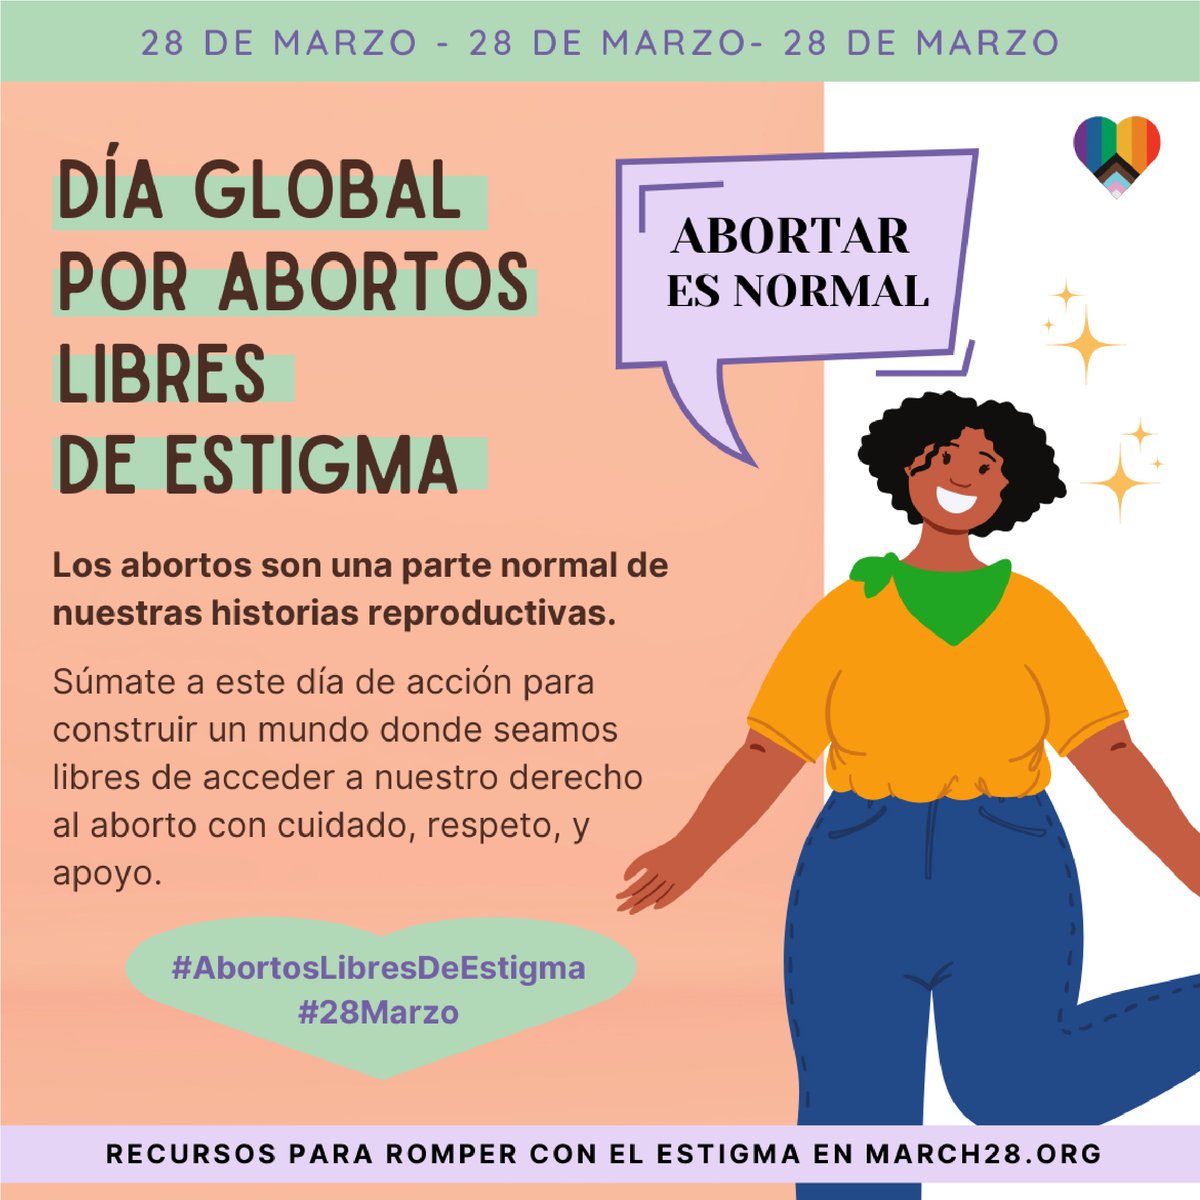 Los abortos son una parte normal de las historias reproductivas 💚 Este #28deMarzo, nos unimos a activistas de todo el mundo para lanzar el Día de Acción Global por Abortos Libres De Estigma 📢 Súmate por #AbortosLibresDeEstigma y consigue recursos en march28.org